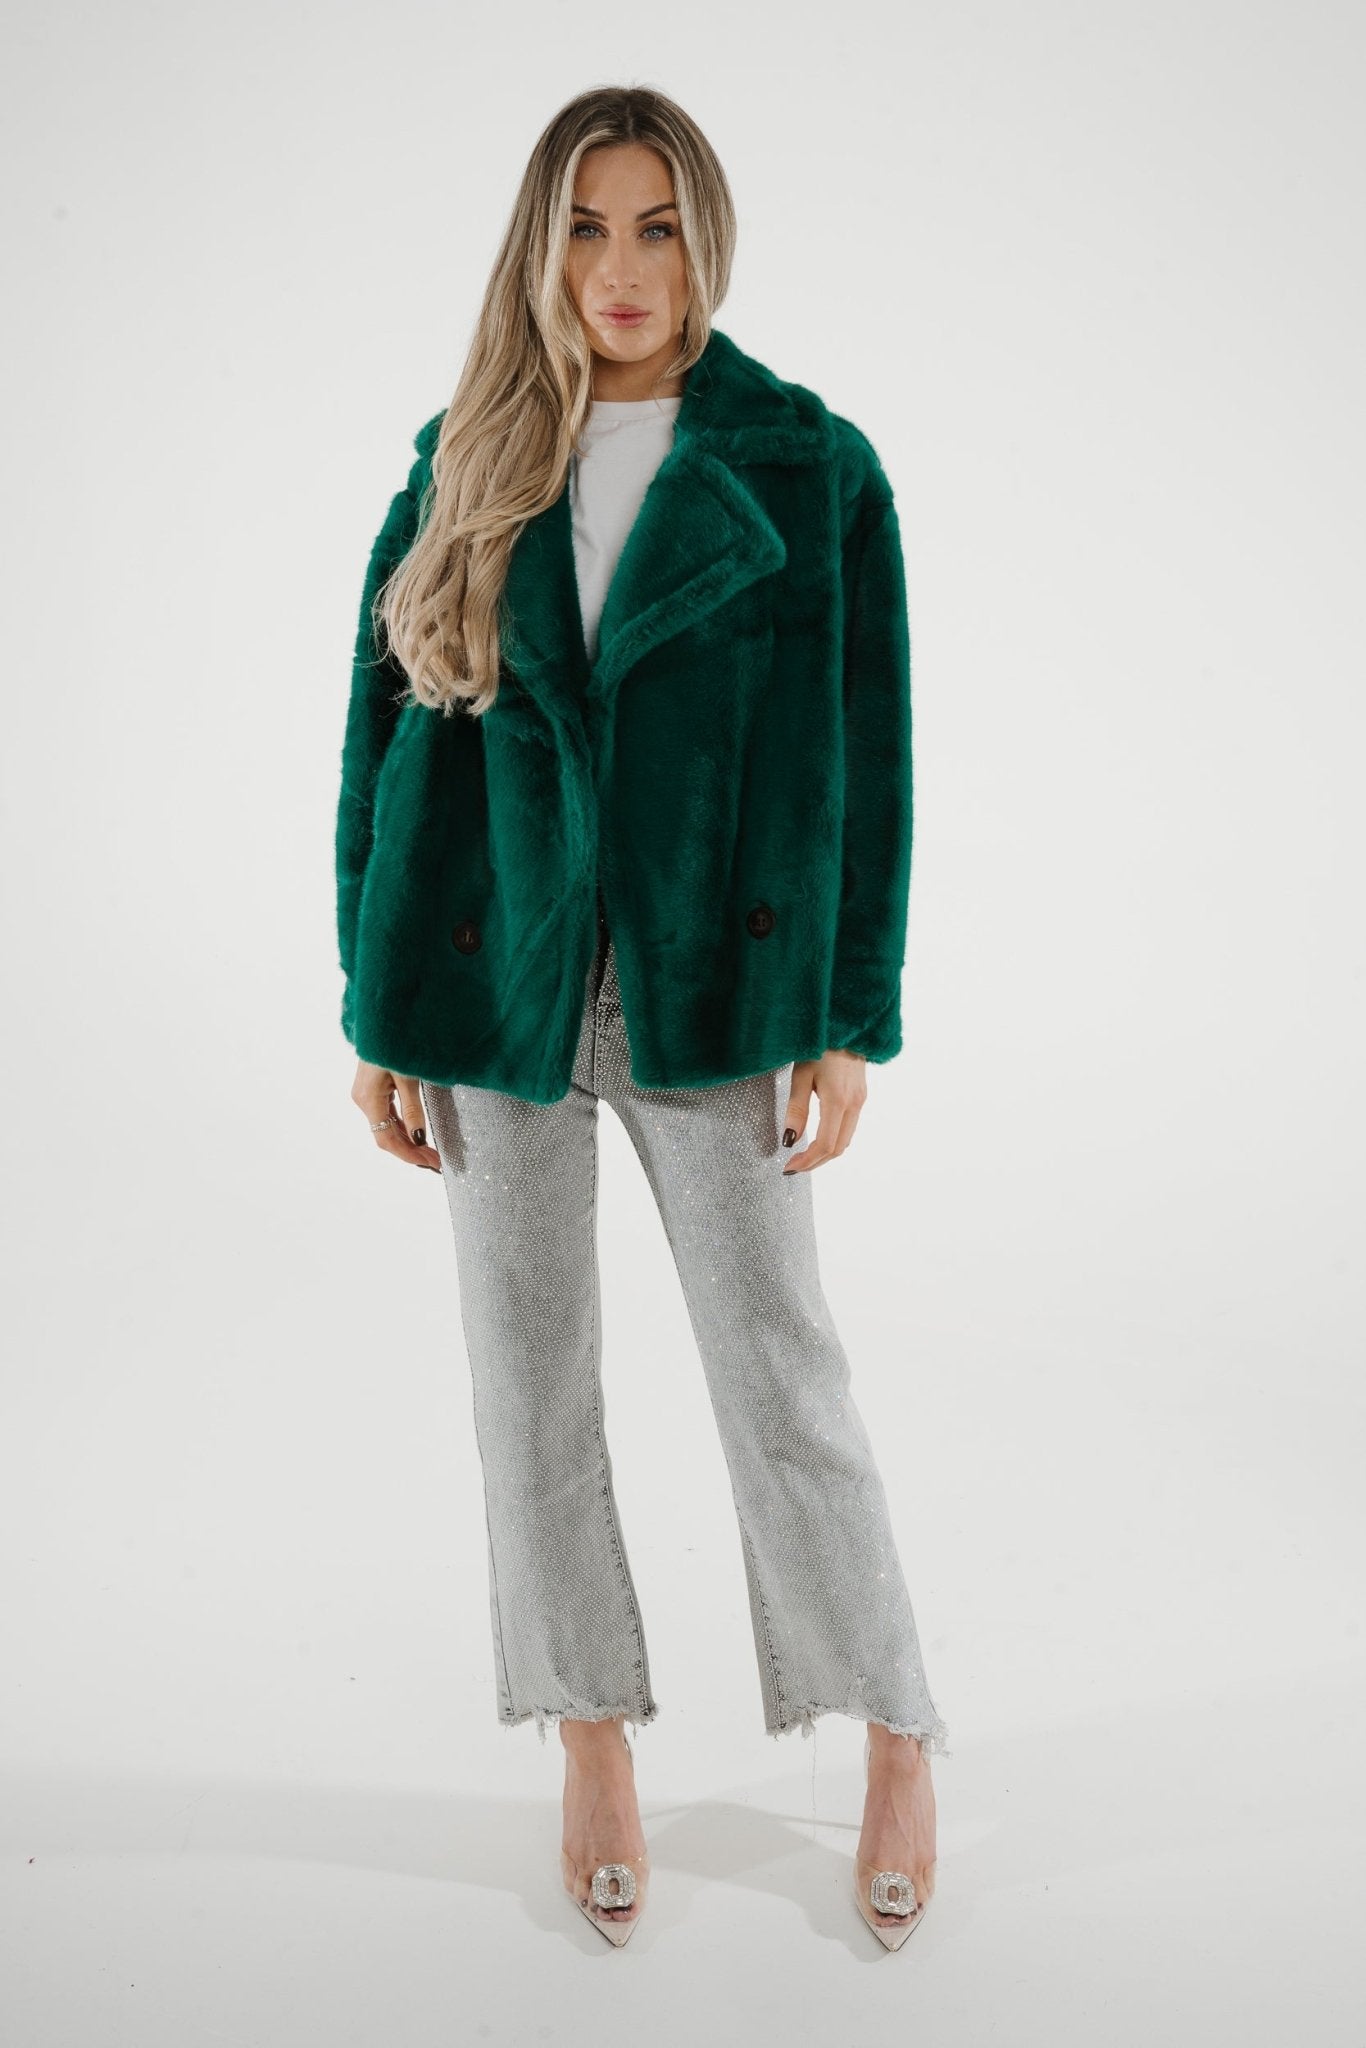 Lila Faux Fur Jacket In Green - The Walk in Wardrobe